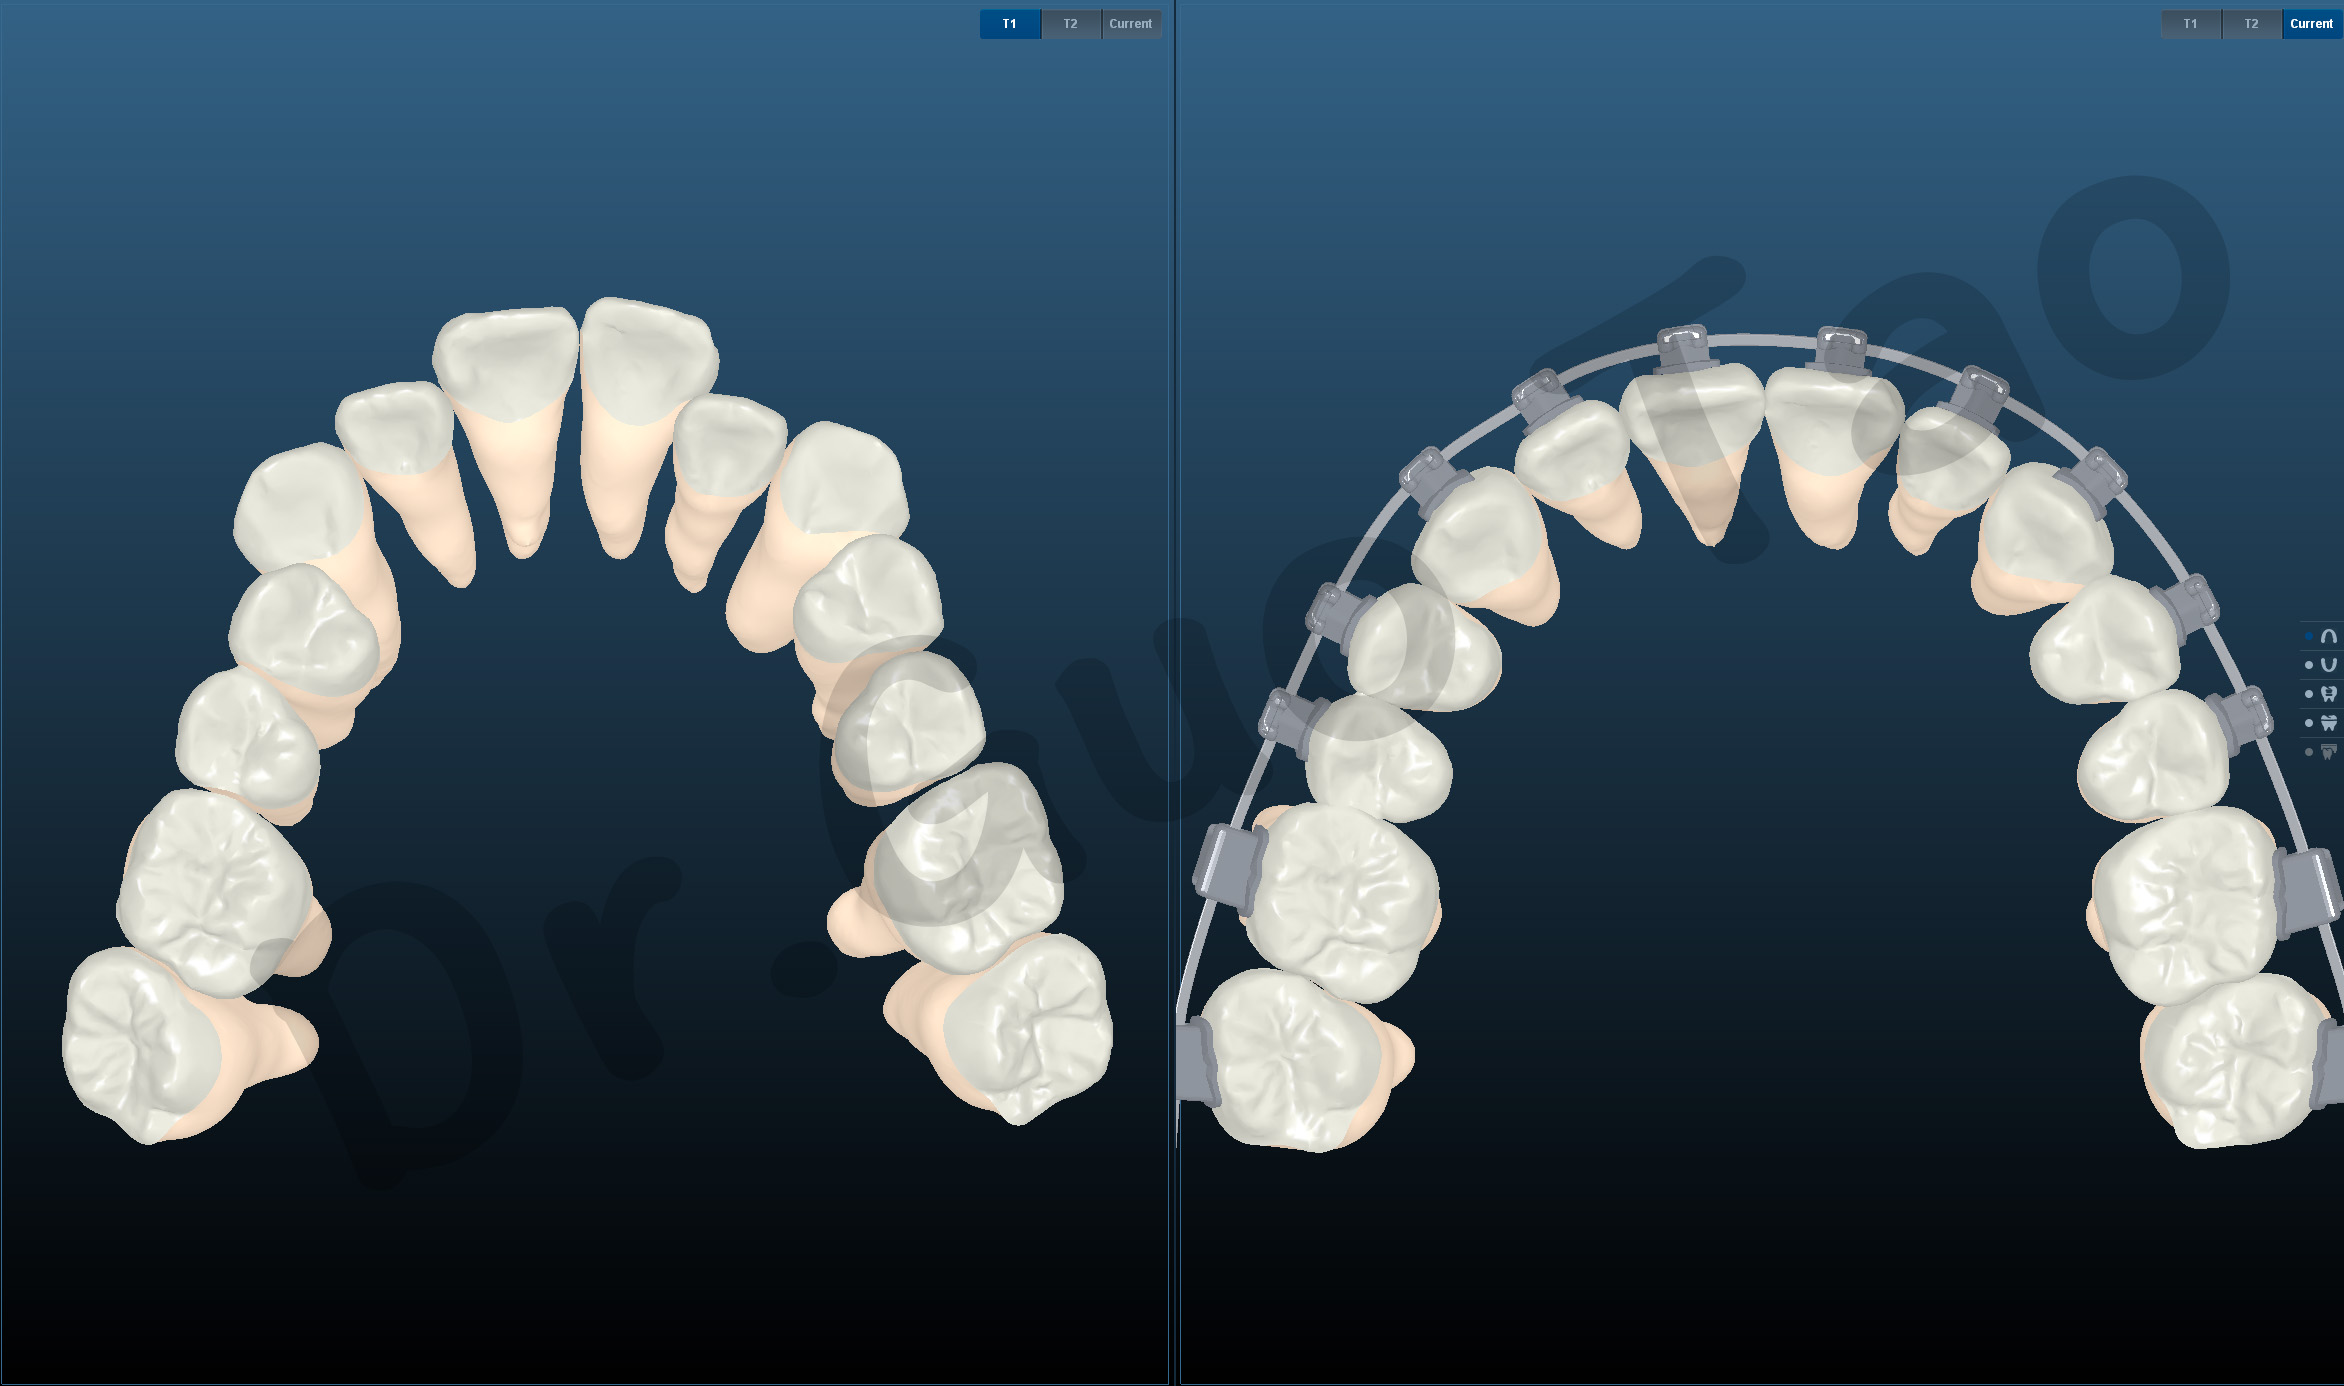 Prostujące nakładki na zęby a aparat ortodontyczny - Hello Smile